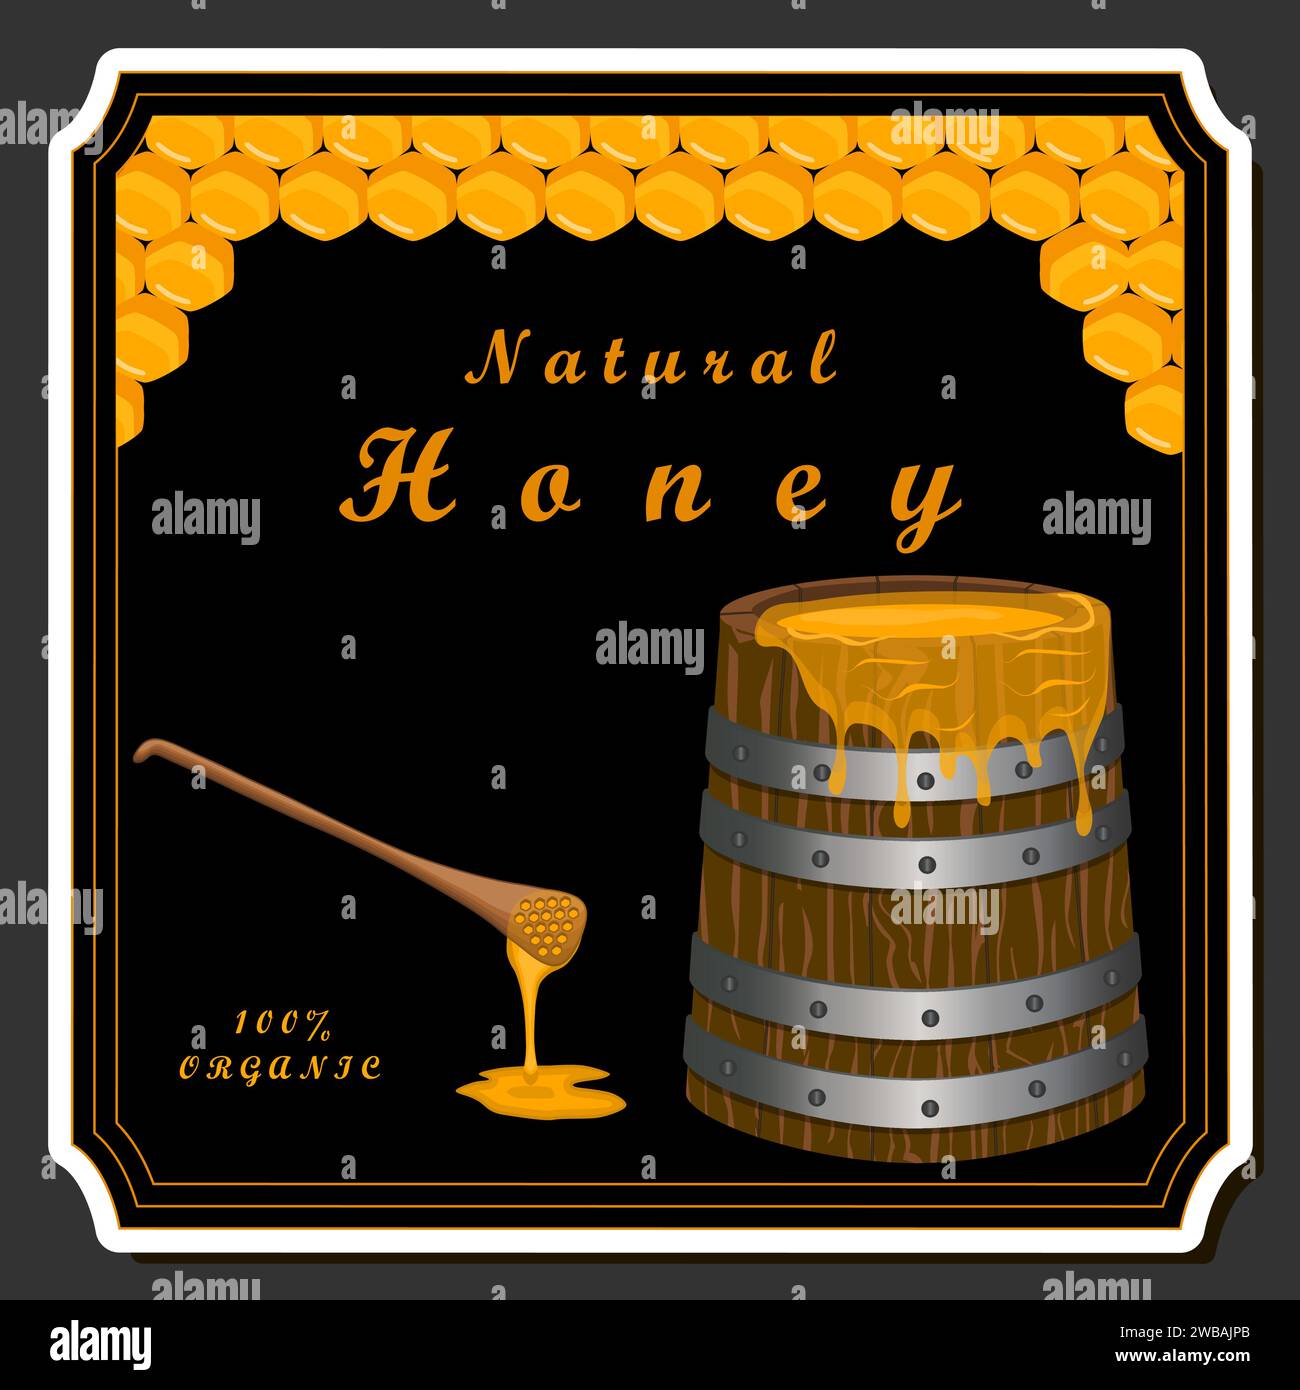 Goccia di miele di ape gocciola da honeycombs esagonali riempito con nettare dorato, honeycombs composizione estiva costituito da goccia di miele naturale, gocciola su wa Illustrazione Vettoriale